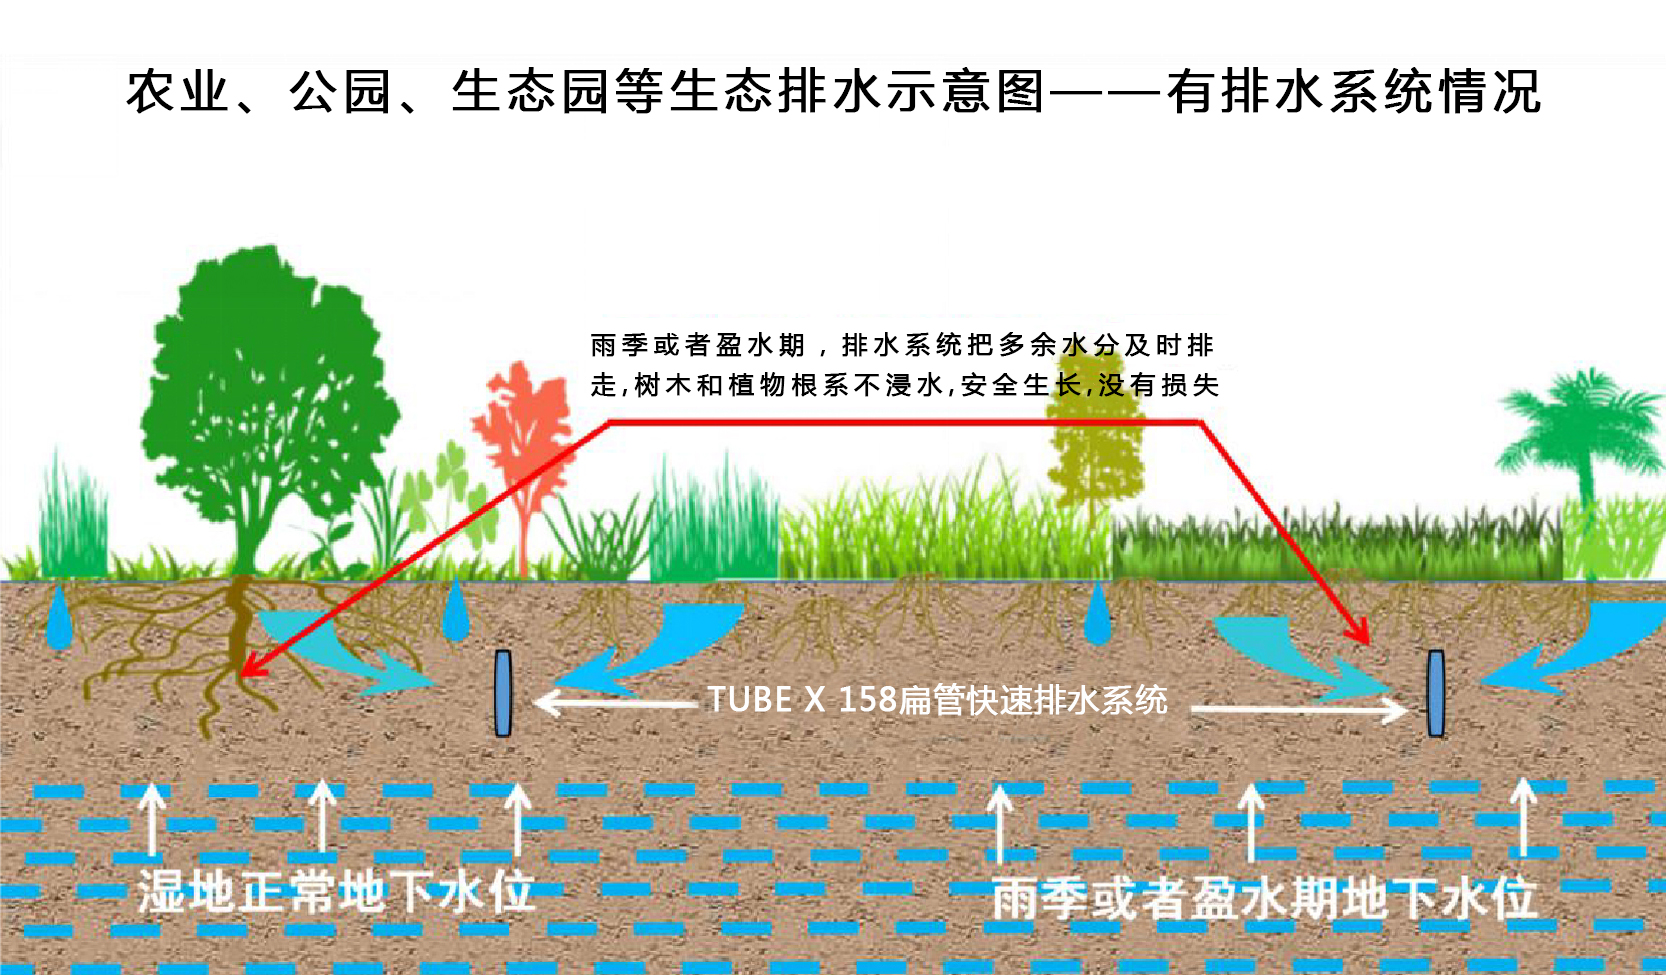 農業、公園、生態園等生態排水示意圖——有排水系統情況.jpg